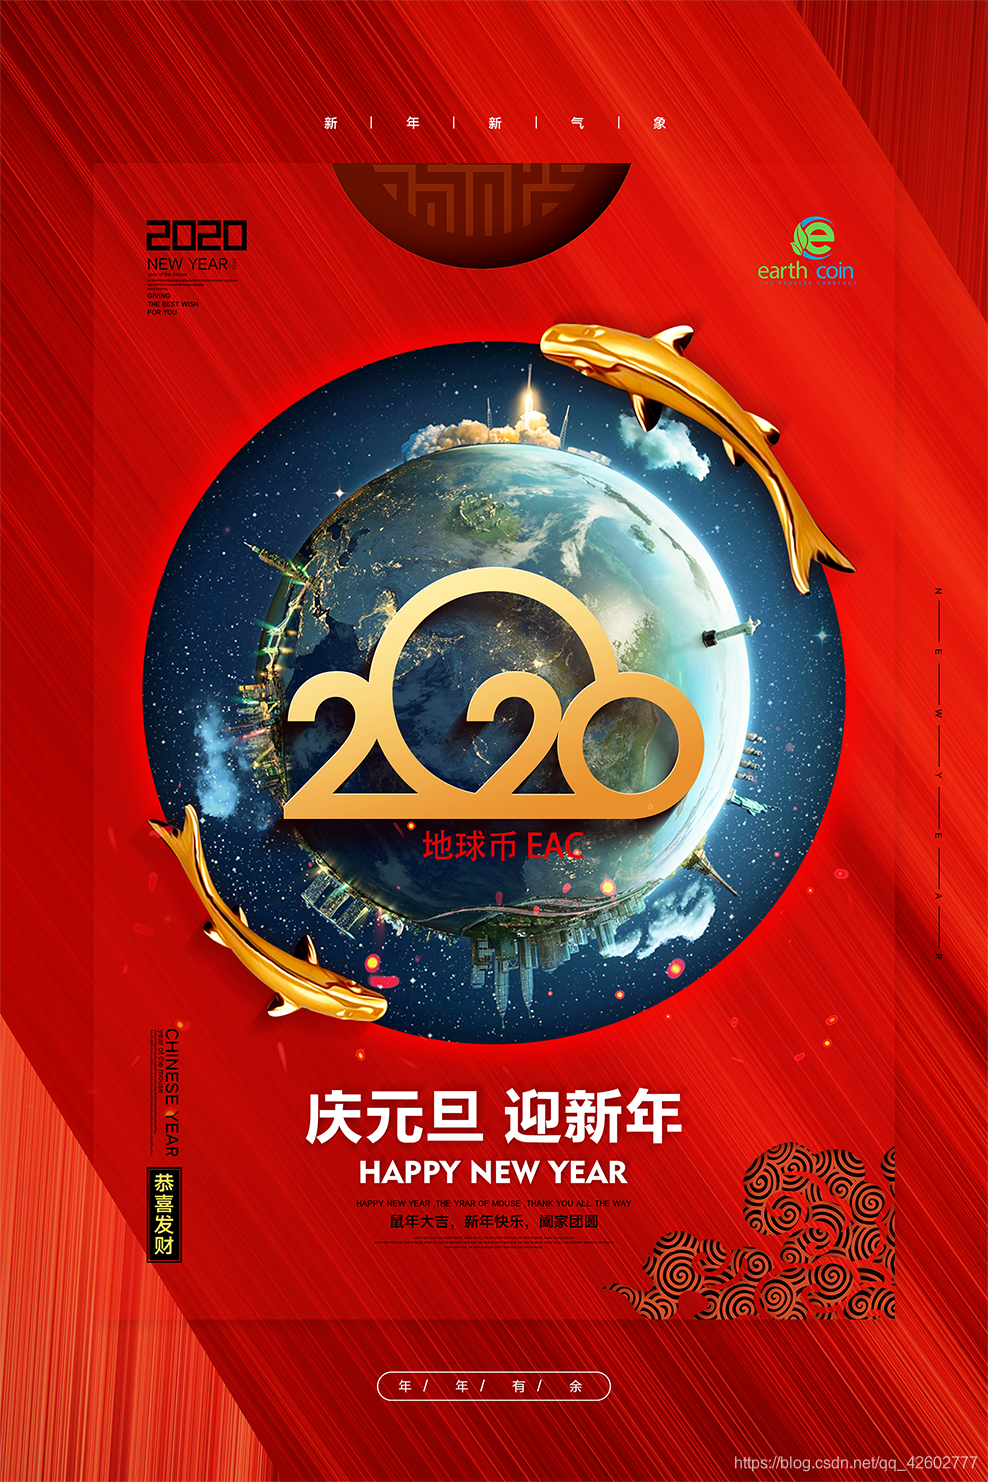 地球币202001